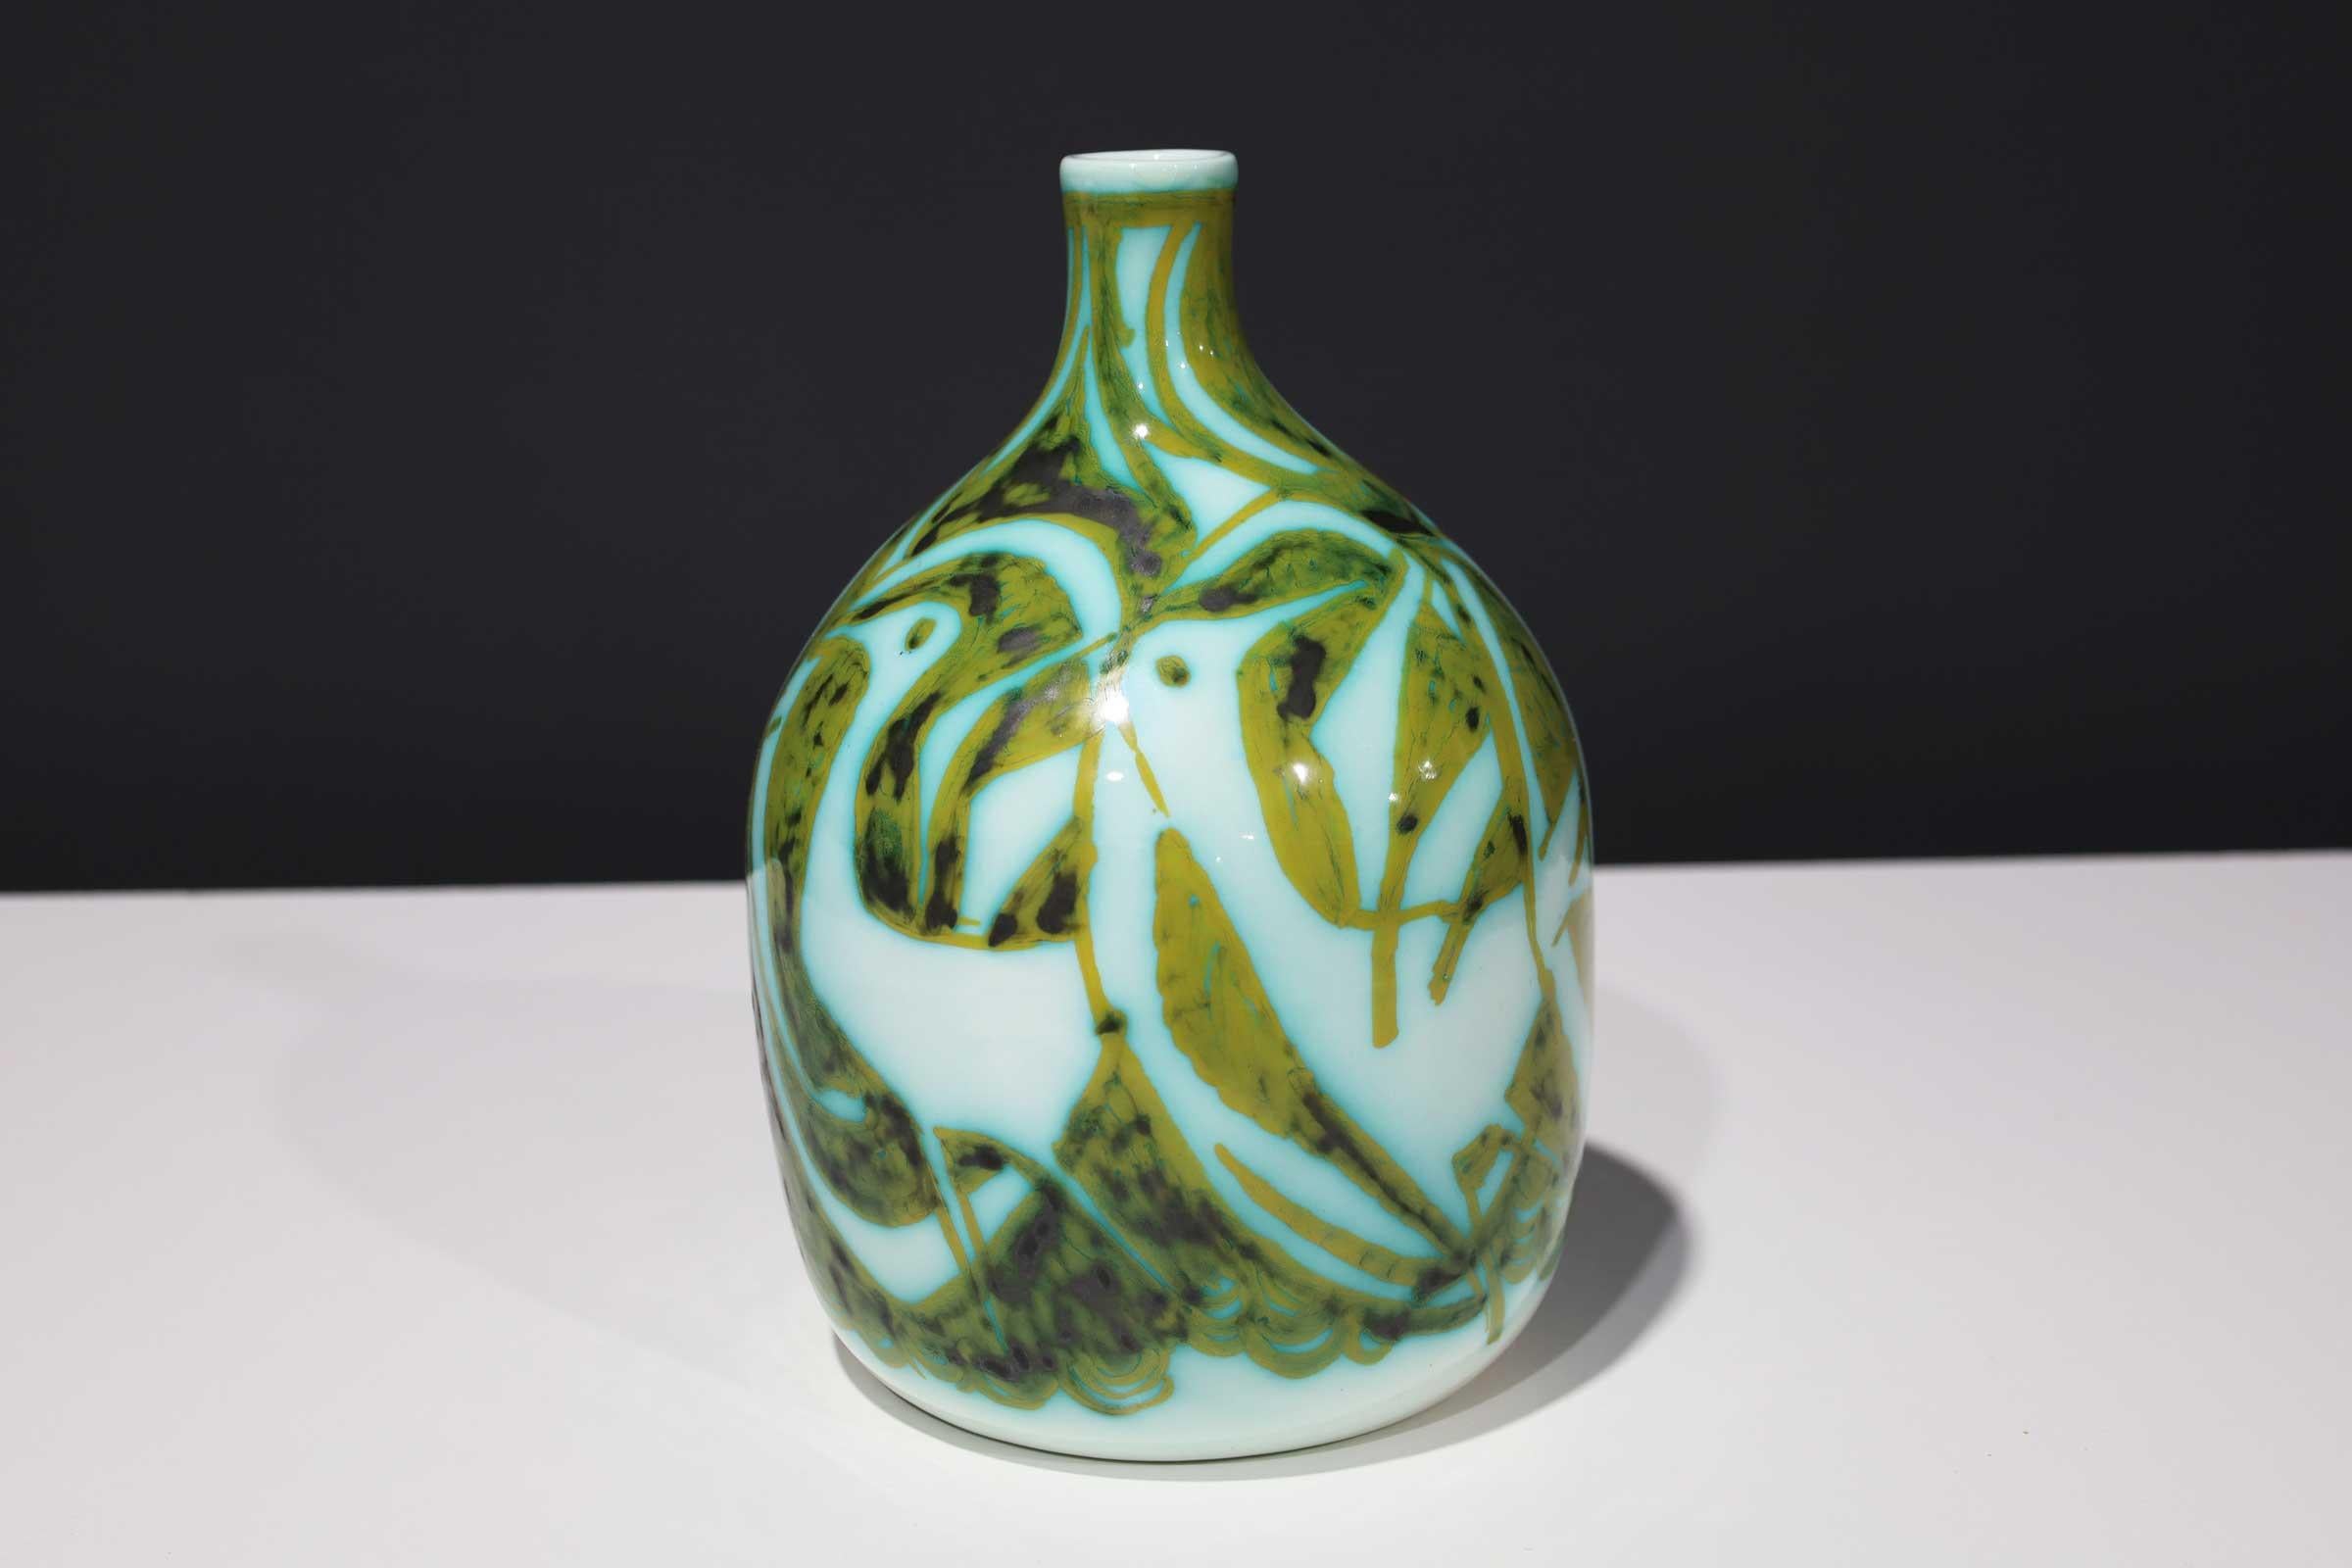 Vase Alessio Tasca für Raymor, Keramik, grün und weiß, signiert.